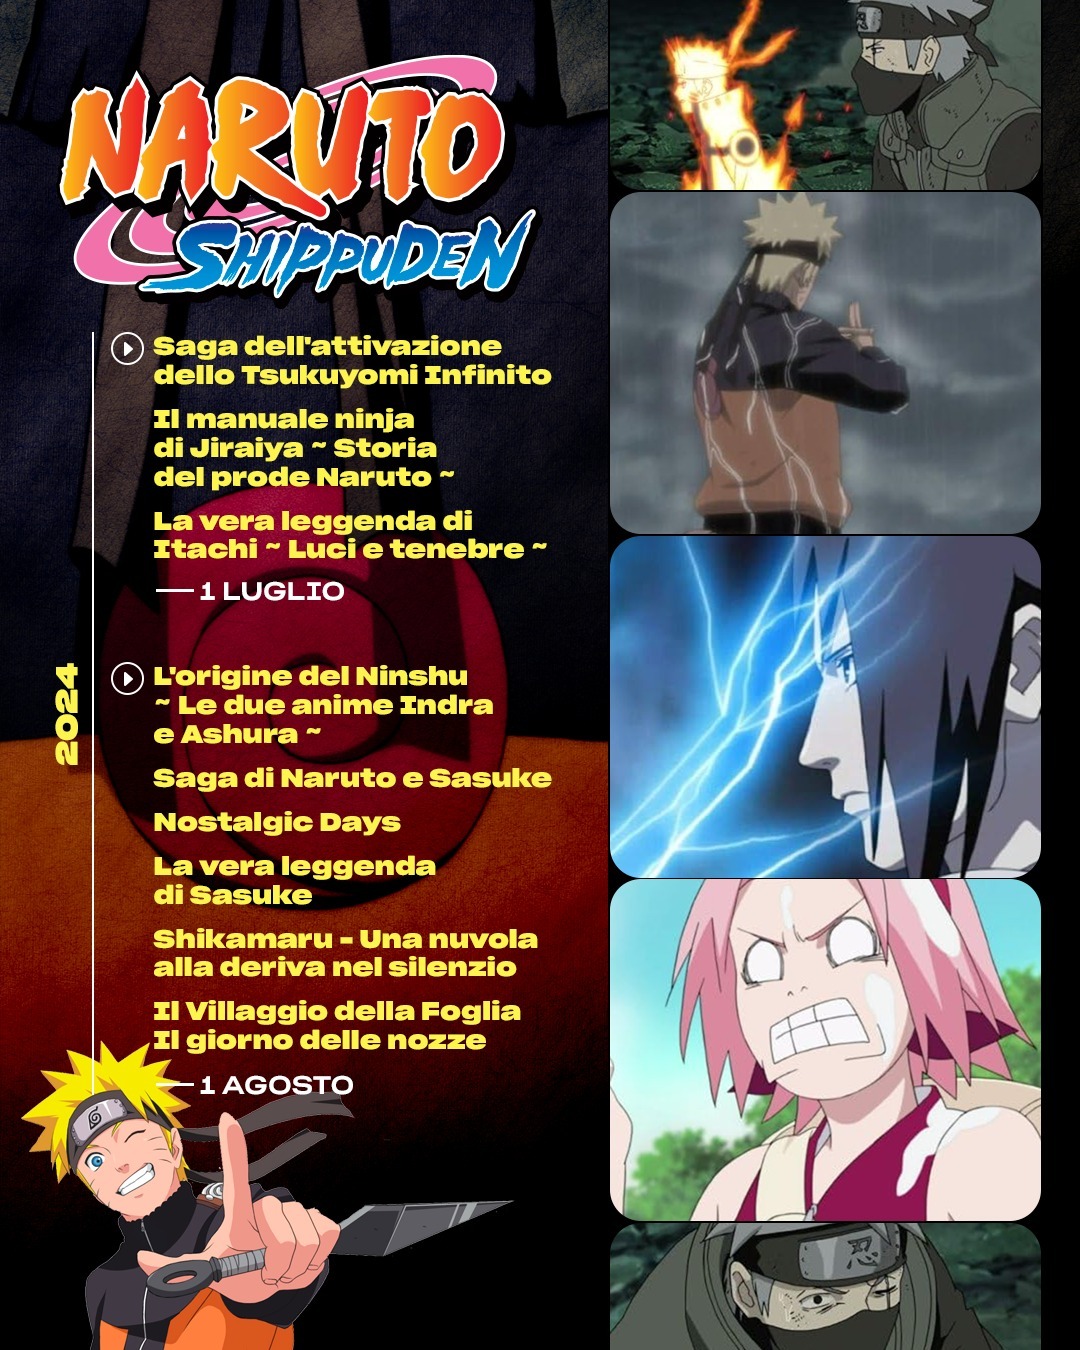 Prime Video: Naruto Shippuden - Temporada 2